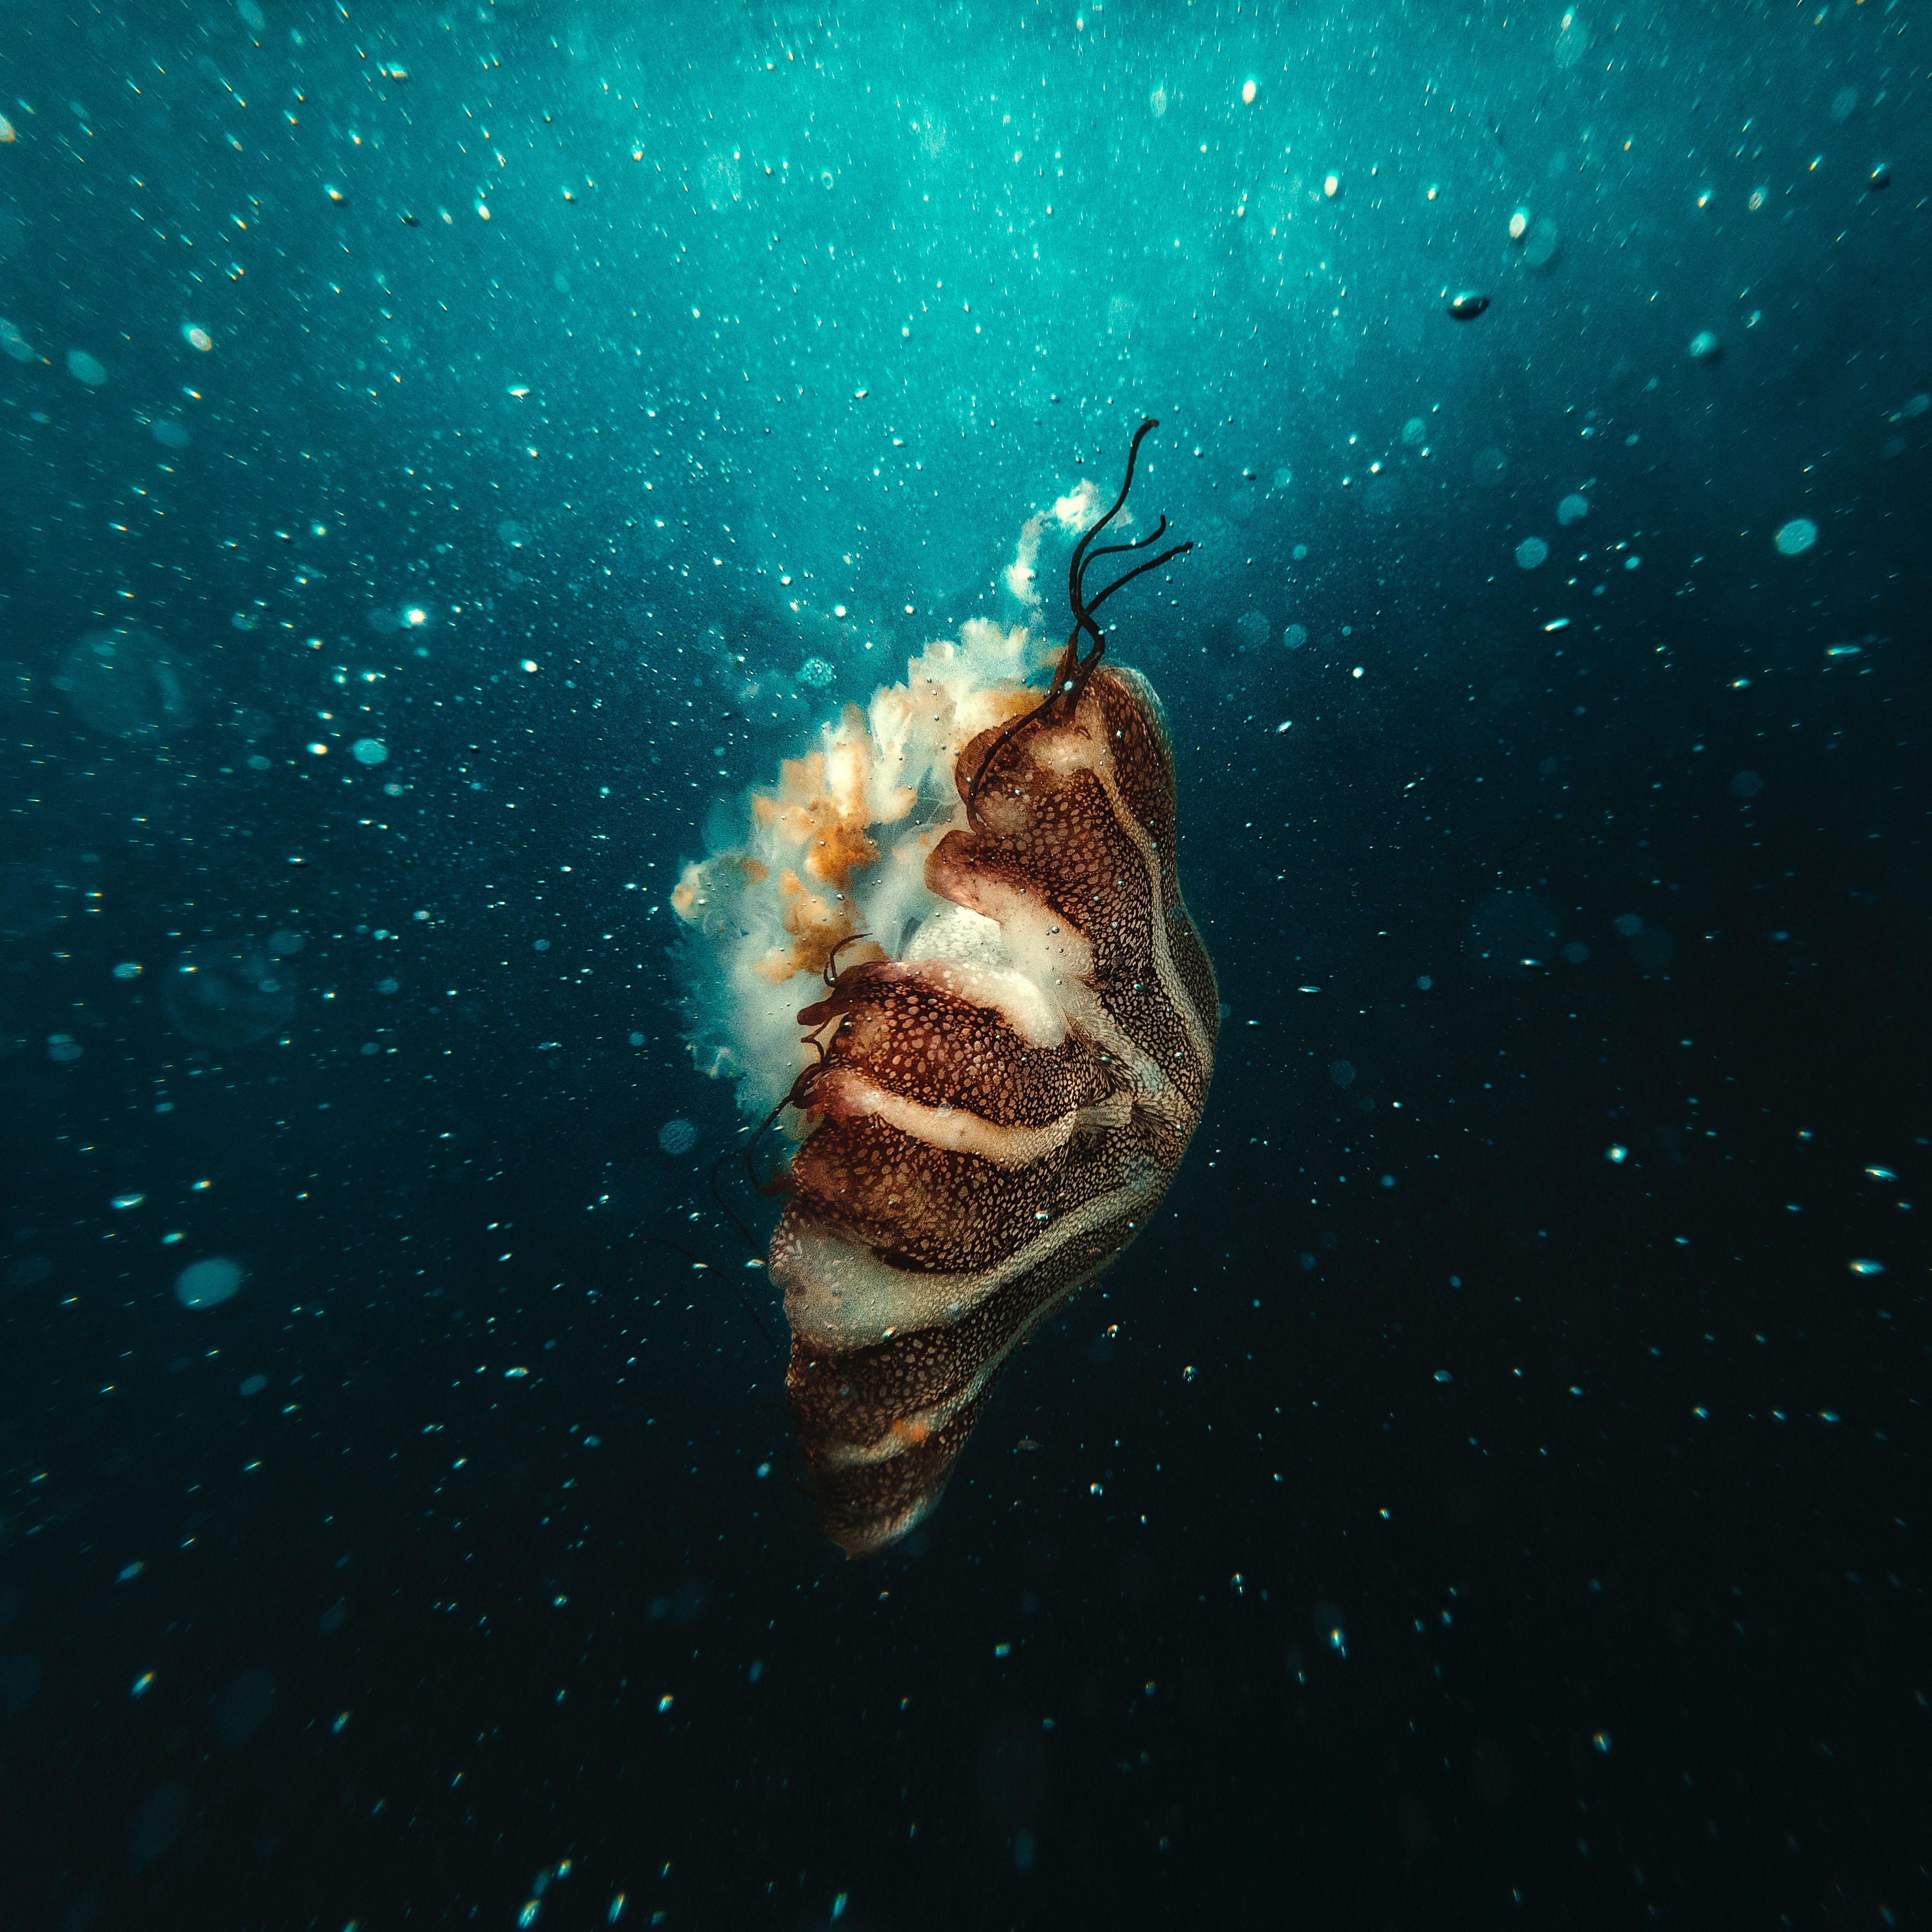 jellyfish, underwater world, under water, animals, bubbles, underwater cellphone